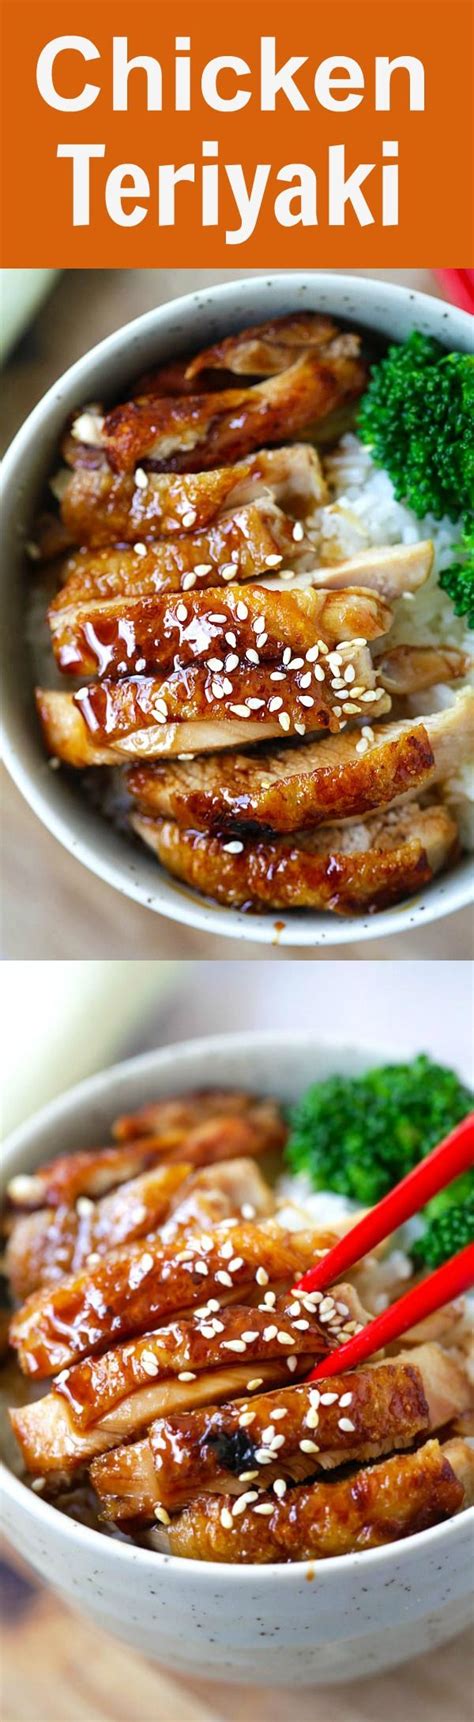 1000+ ideas about Chicken Teriyaki Recipe on Pinterest ...